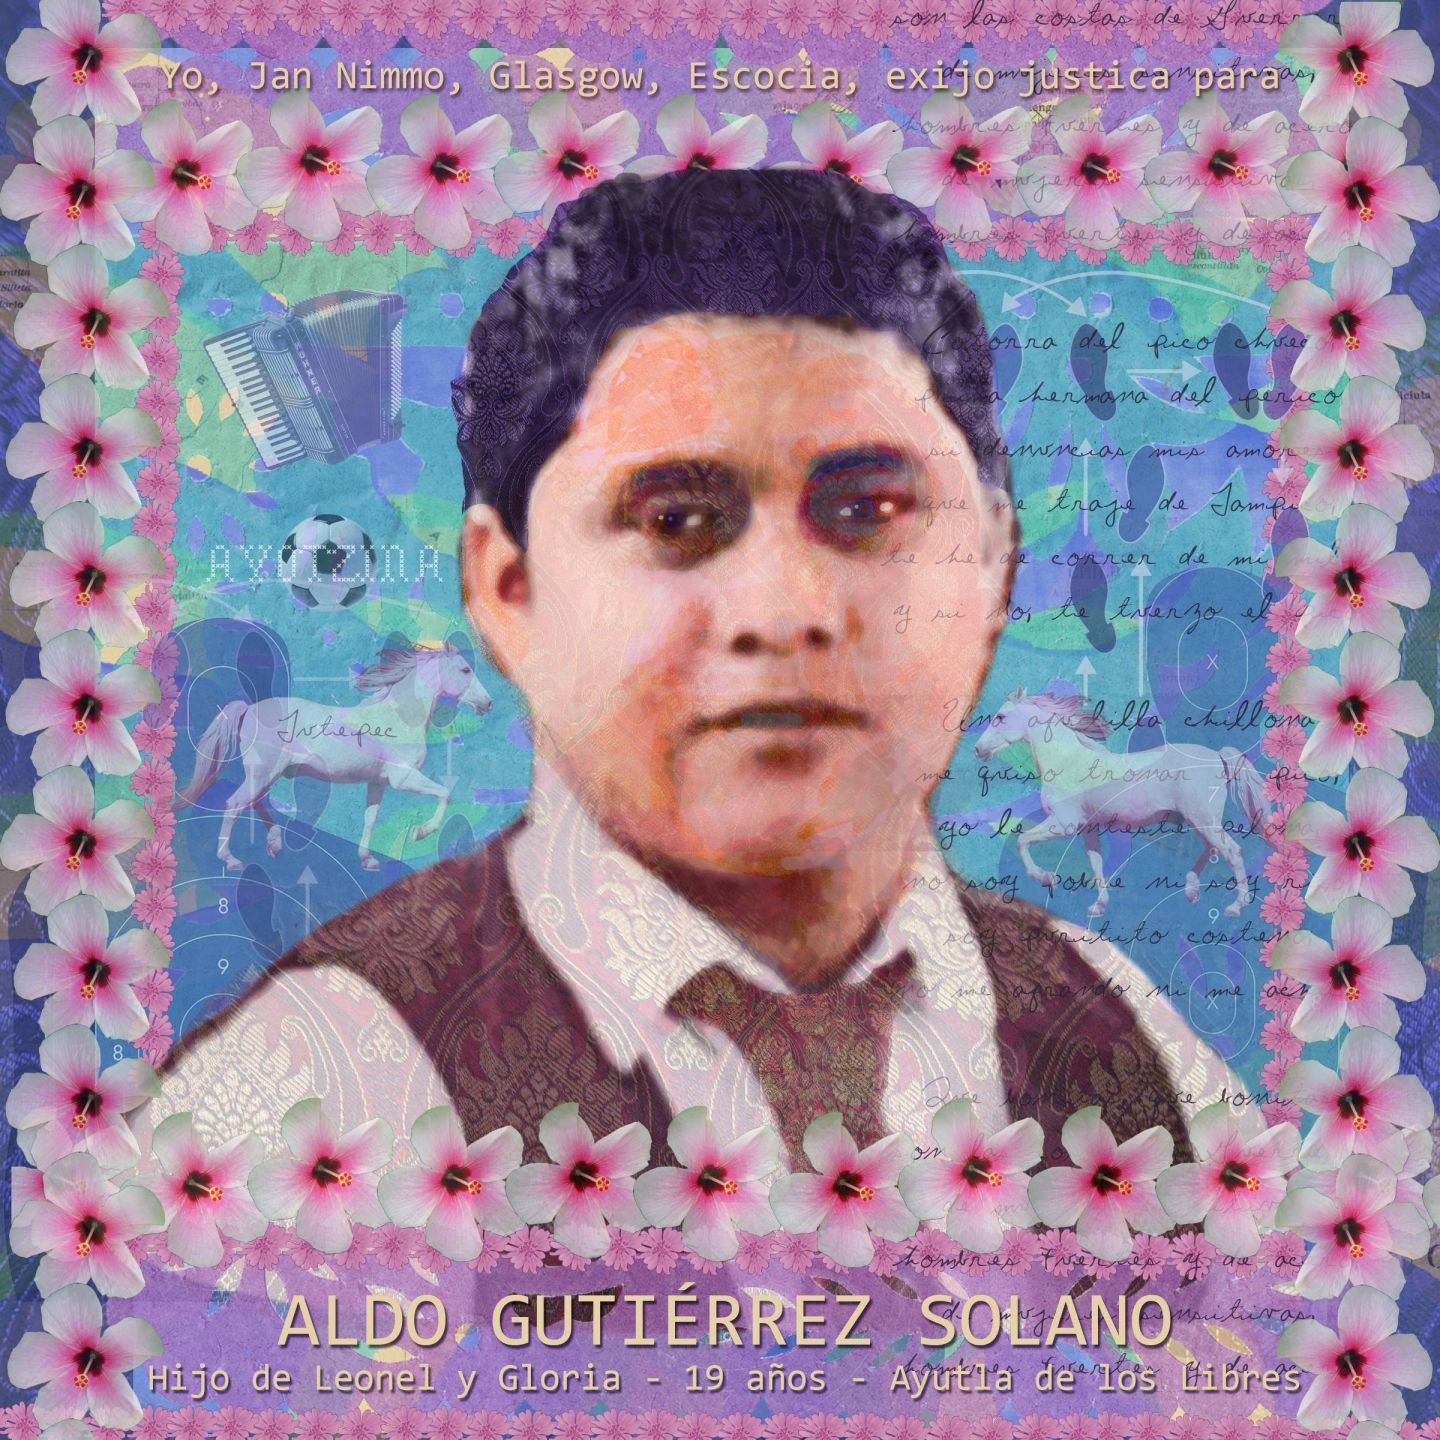 Portrait of Aldo Gutierrez Solano by Jan Nimo